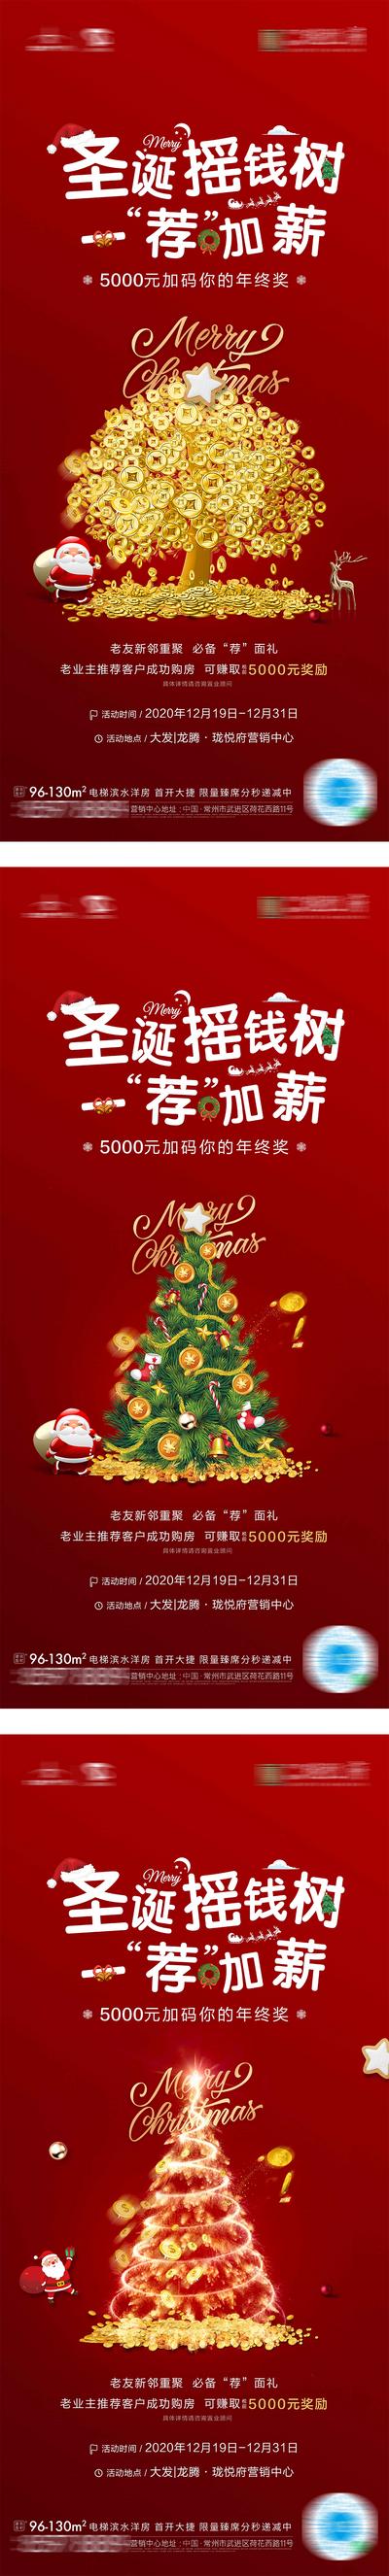 南门网 海报 房地产 公历节日 圣诞节 圣诞树